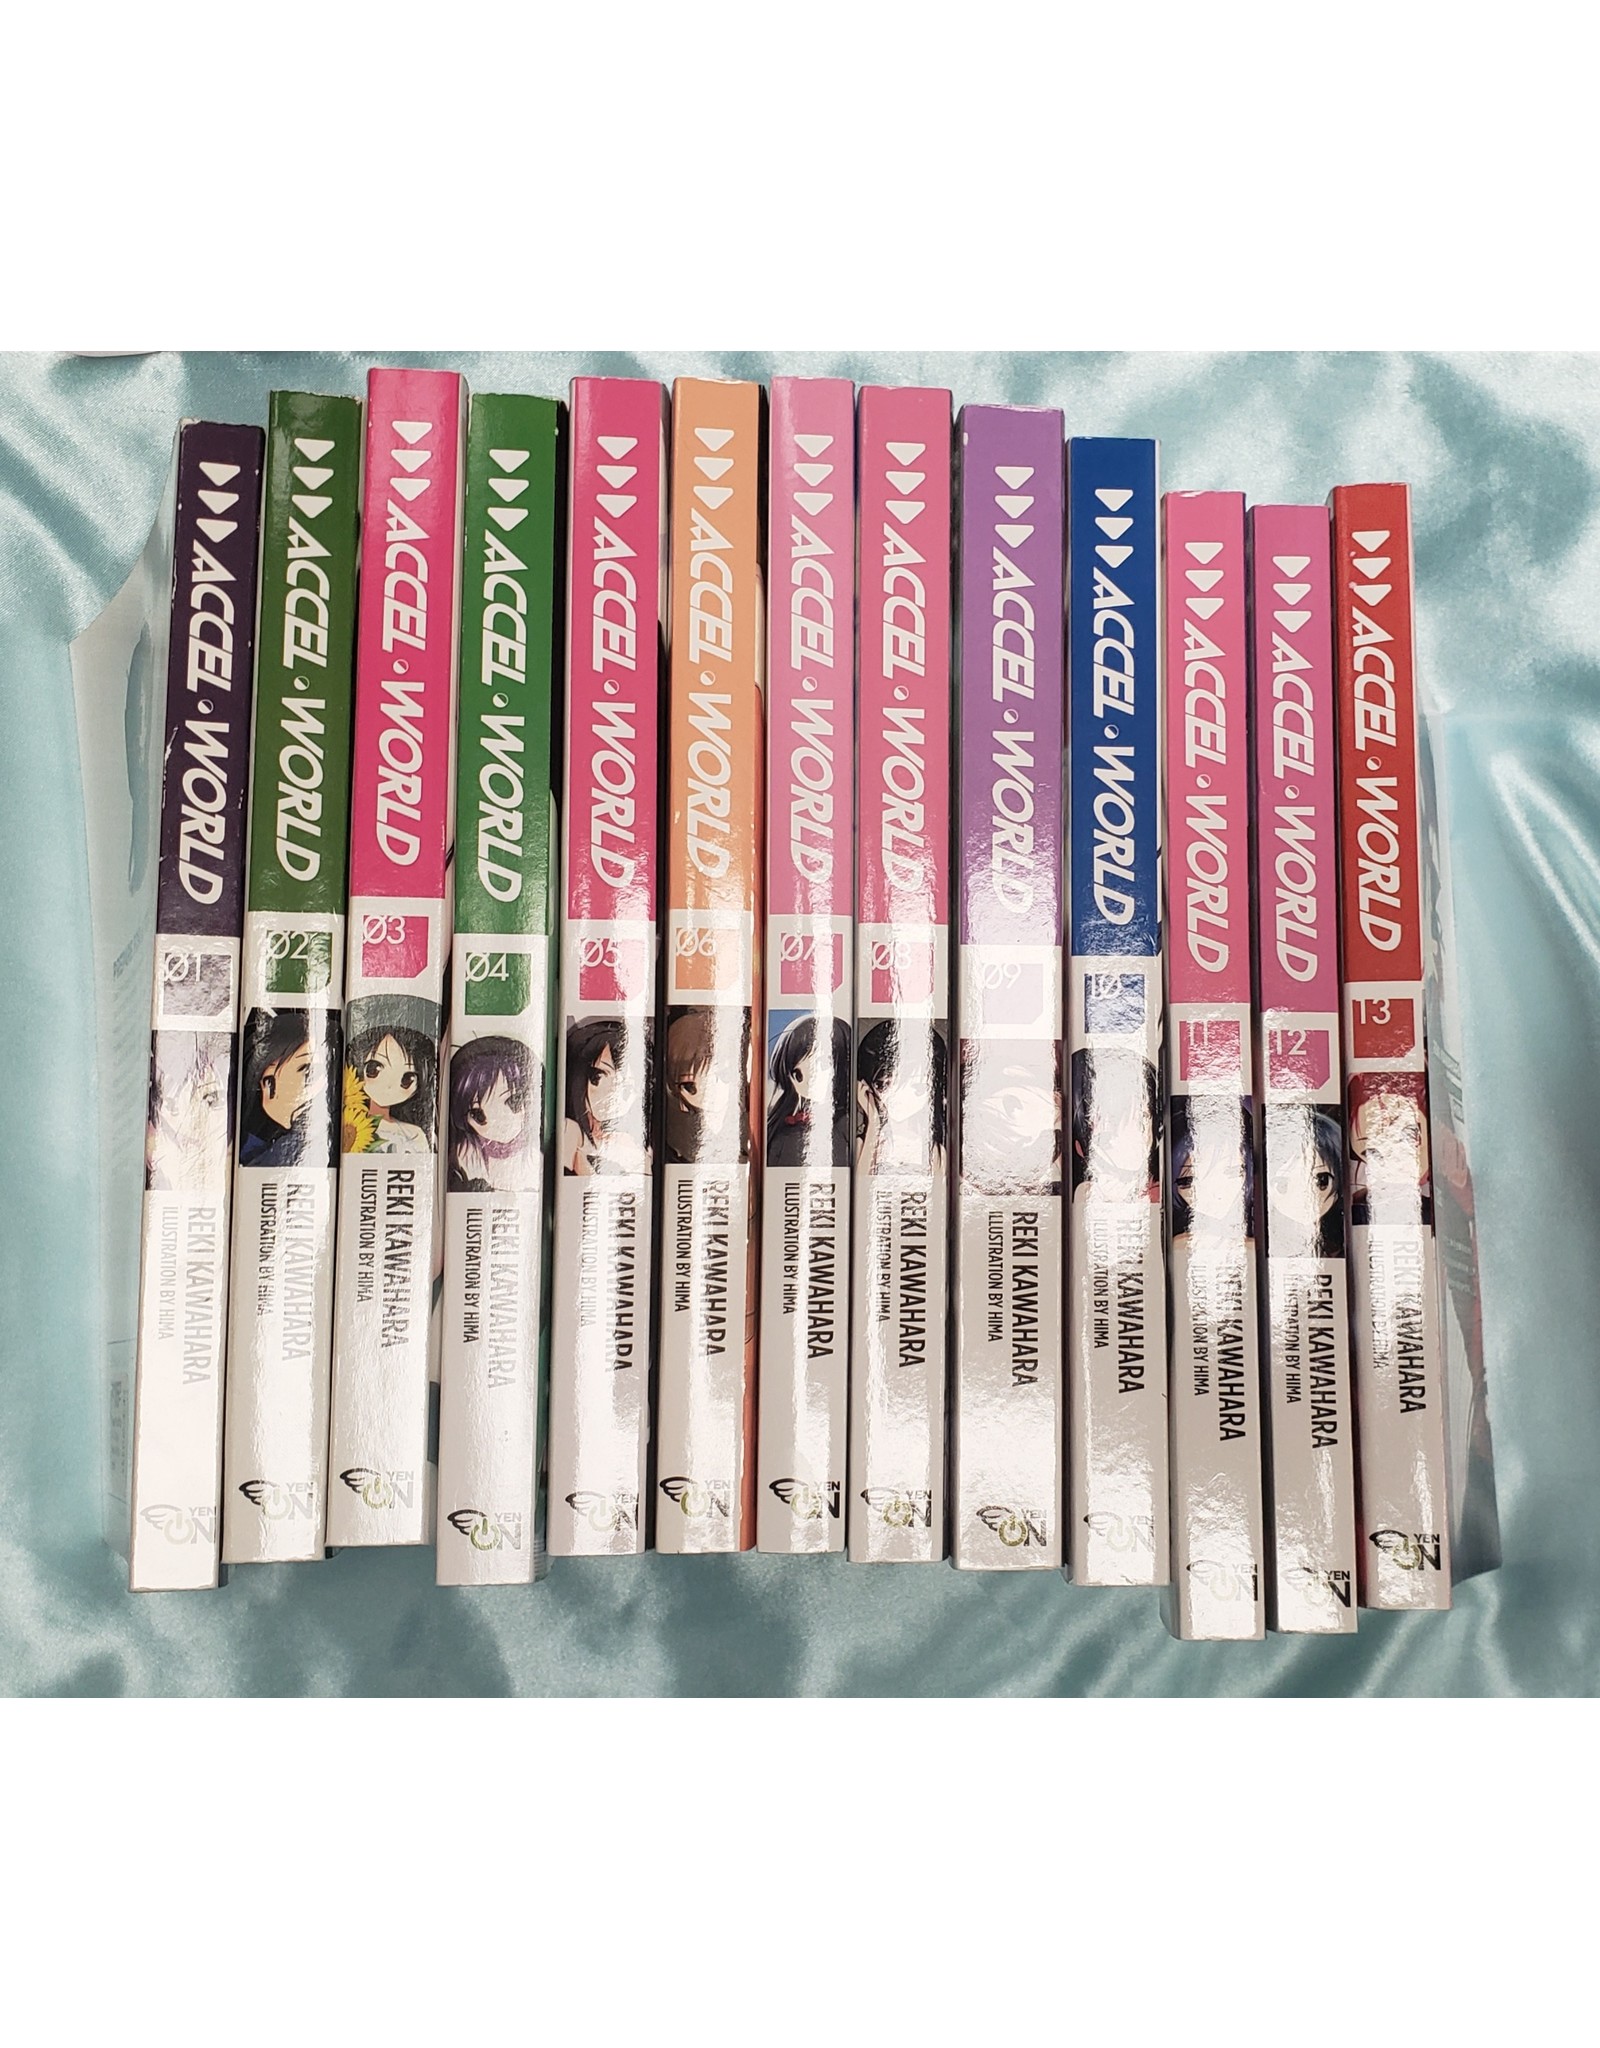 Accel World Vol. 1-13 Light Novel Bundle (used)